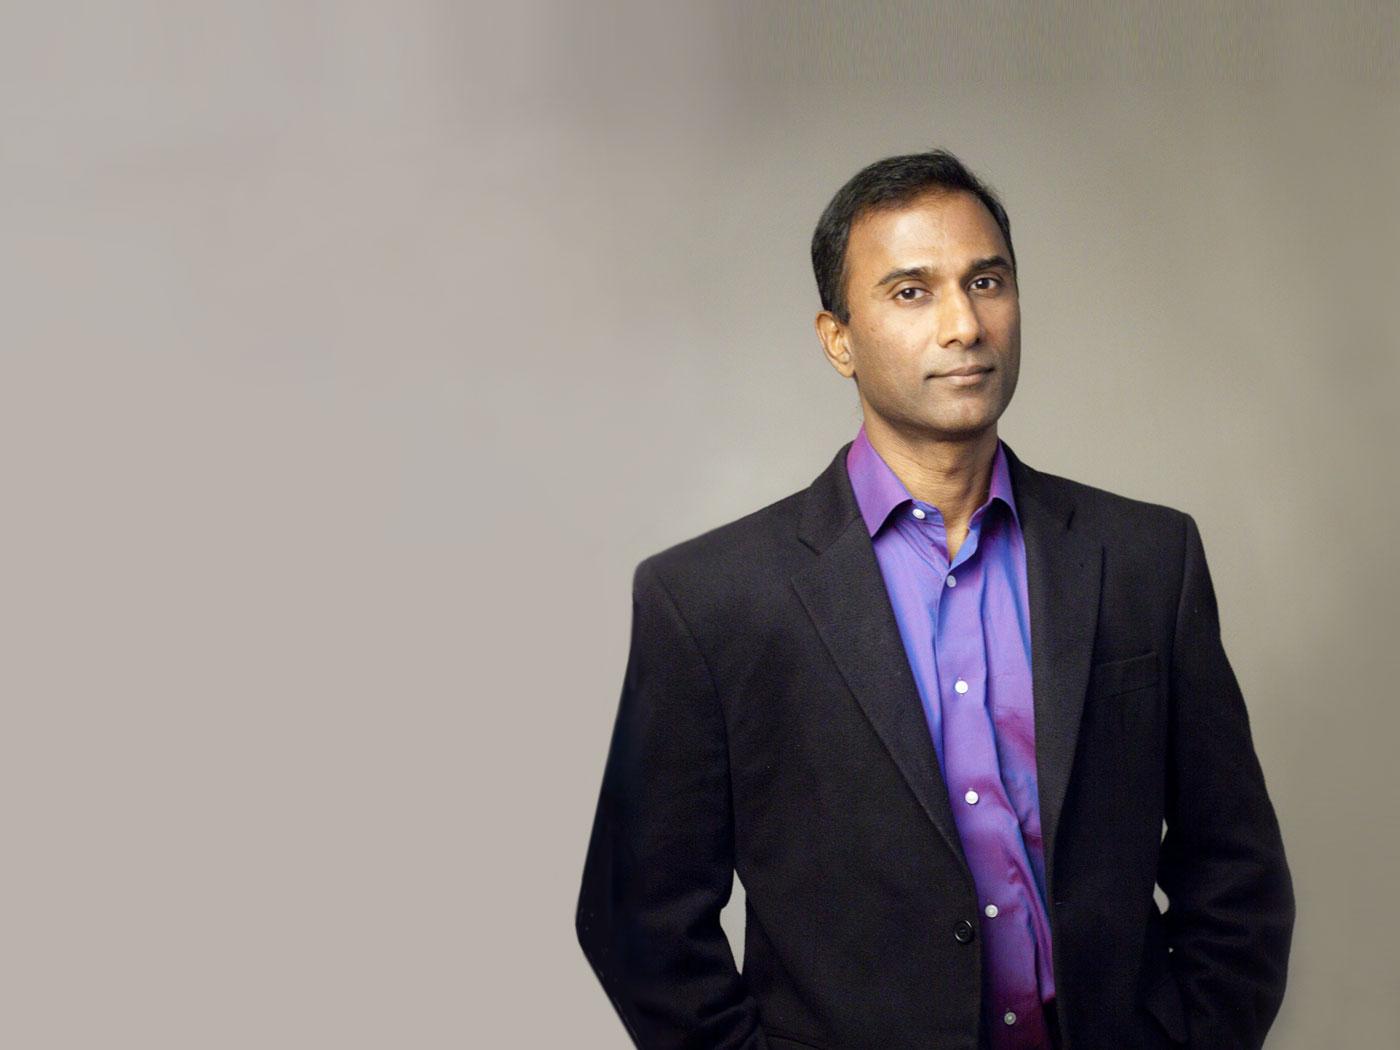 Shiva Ayyadurai awarded $750,000 in Gawker Settlement